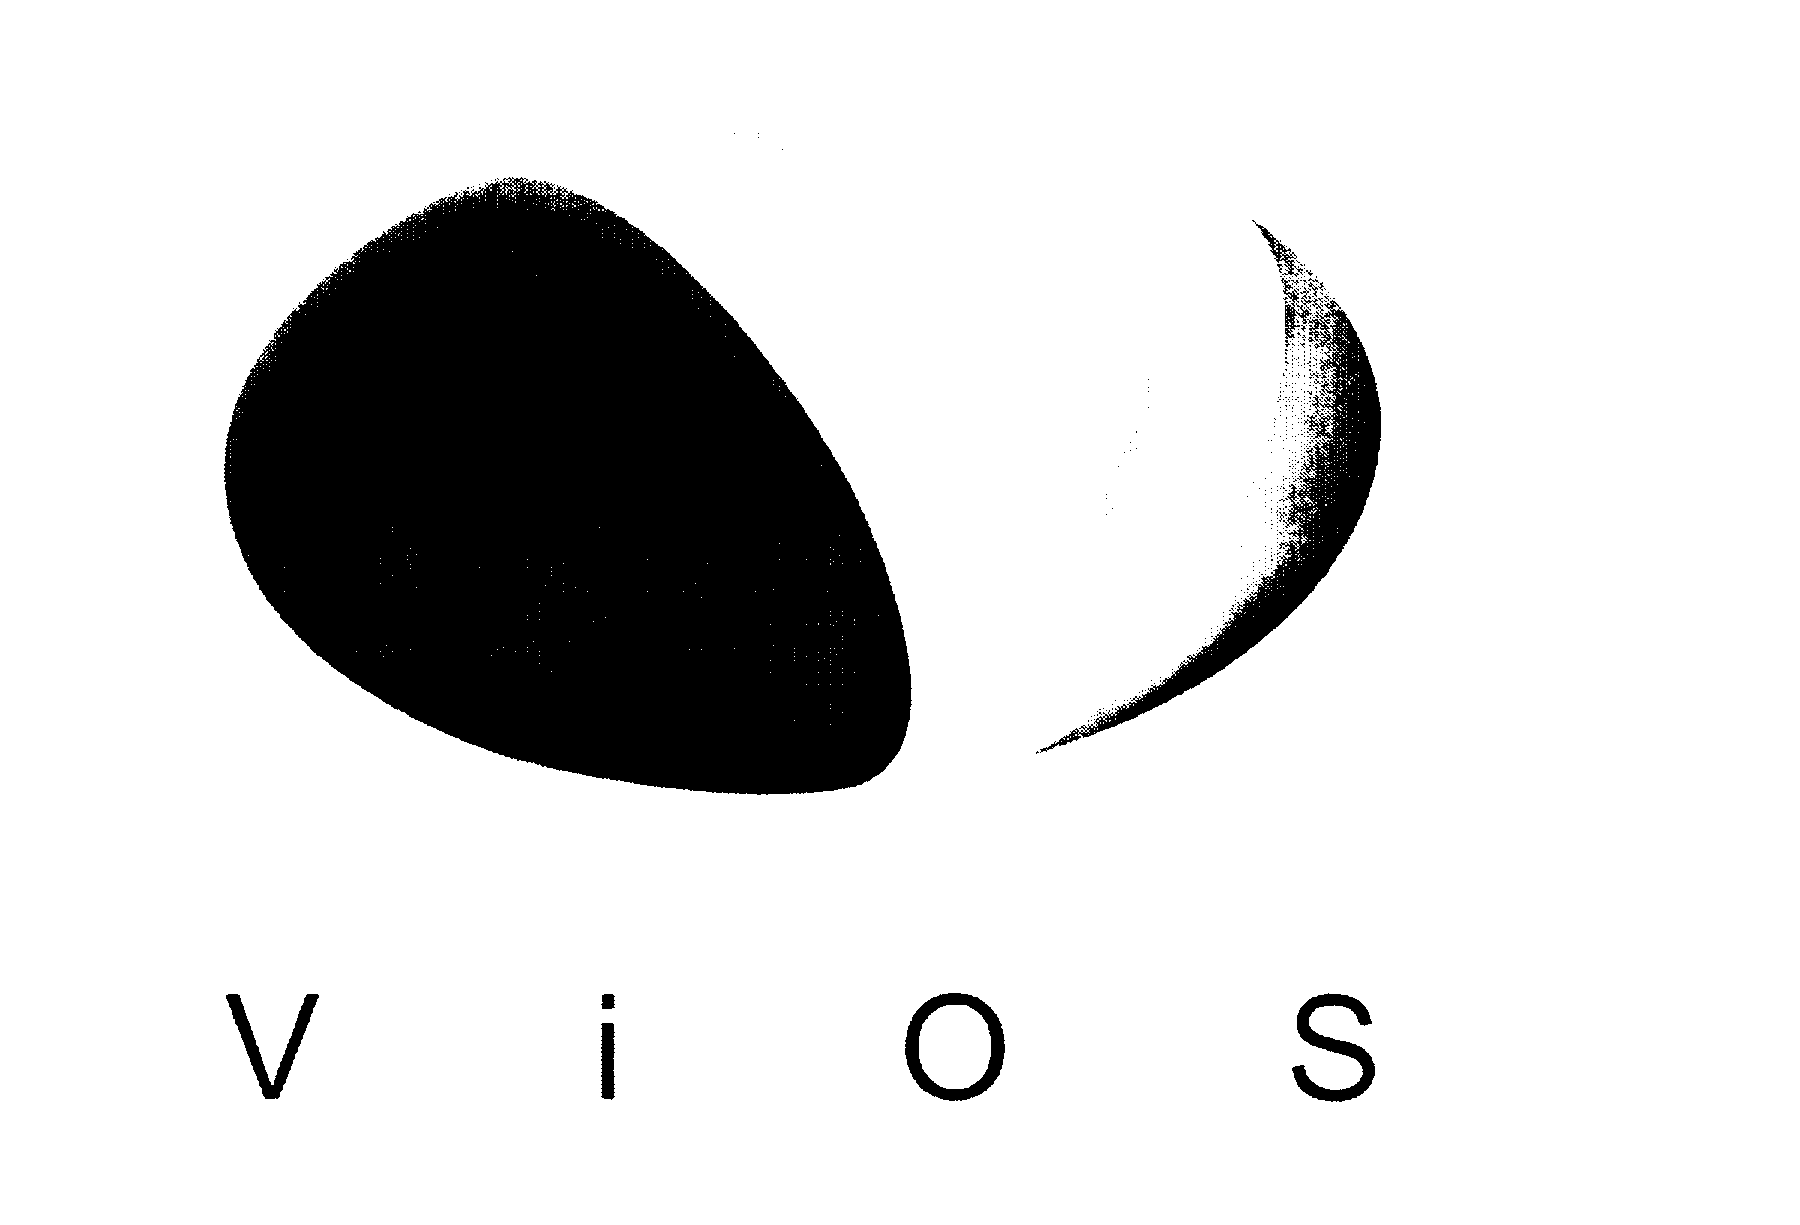 Trademark Logo VIOS